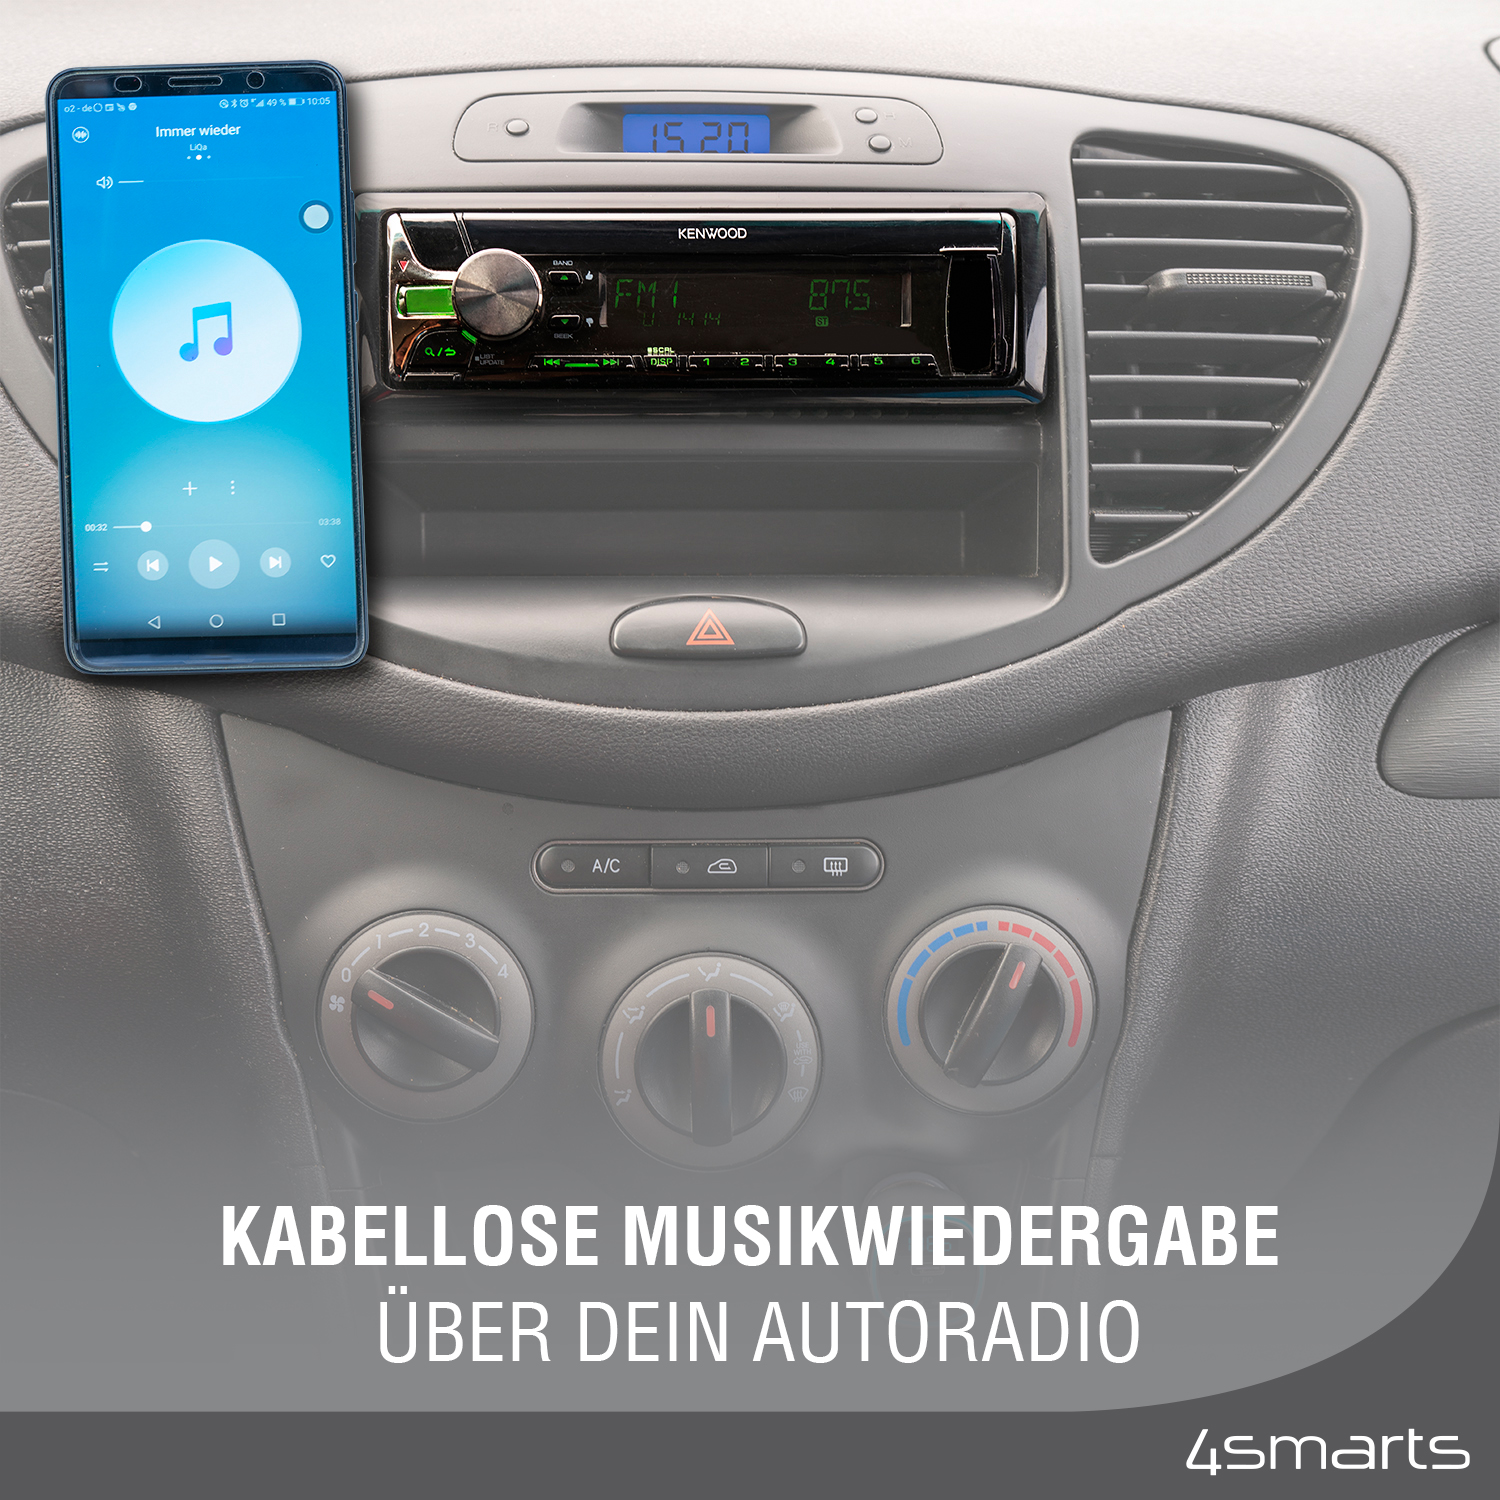 Mit dem 4smarts Bluetooth Transmitter Media&Assist 2 ist die kabellose Musikwiedergabe über das Autoradio ganz einfach und schnell.